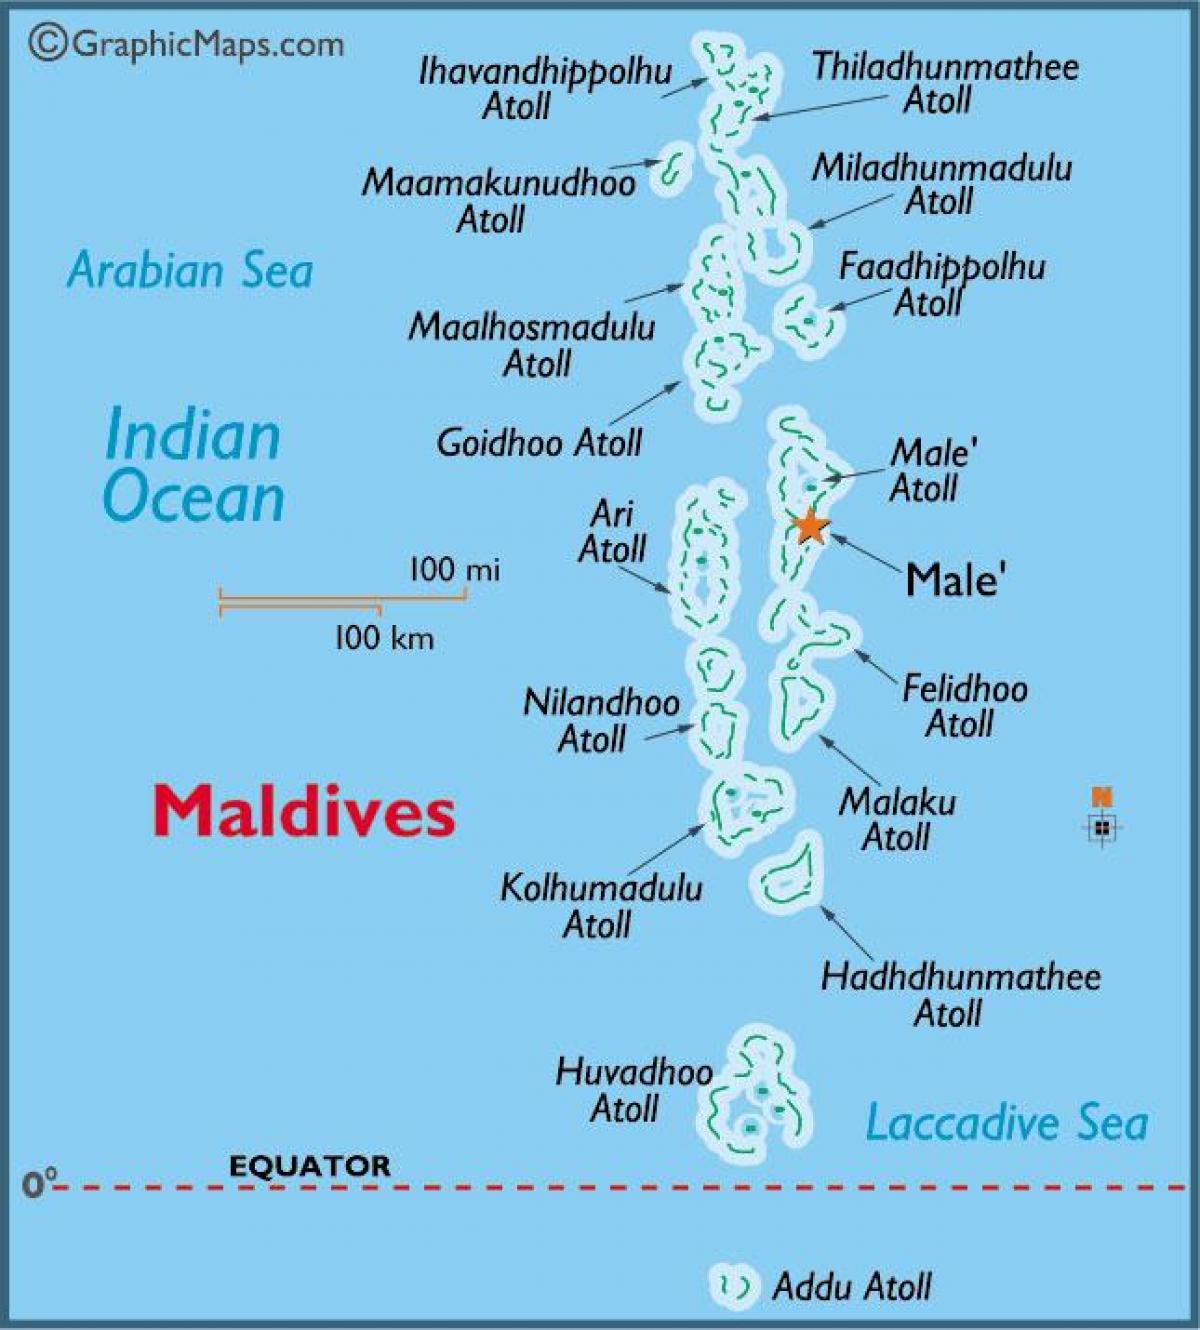 baa atoll মালদ্বীপ মানচিত্র